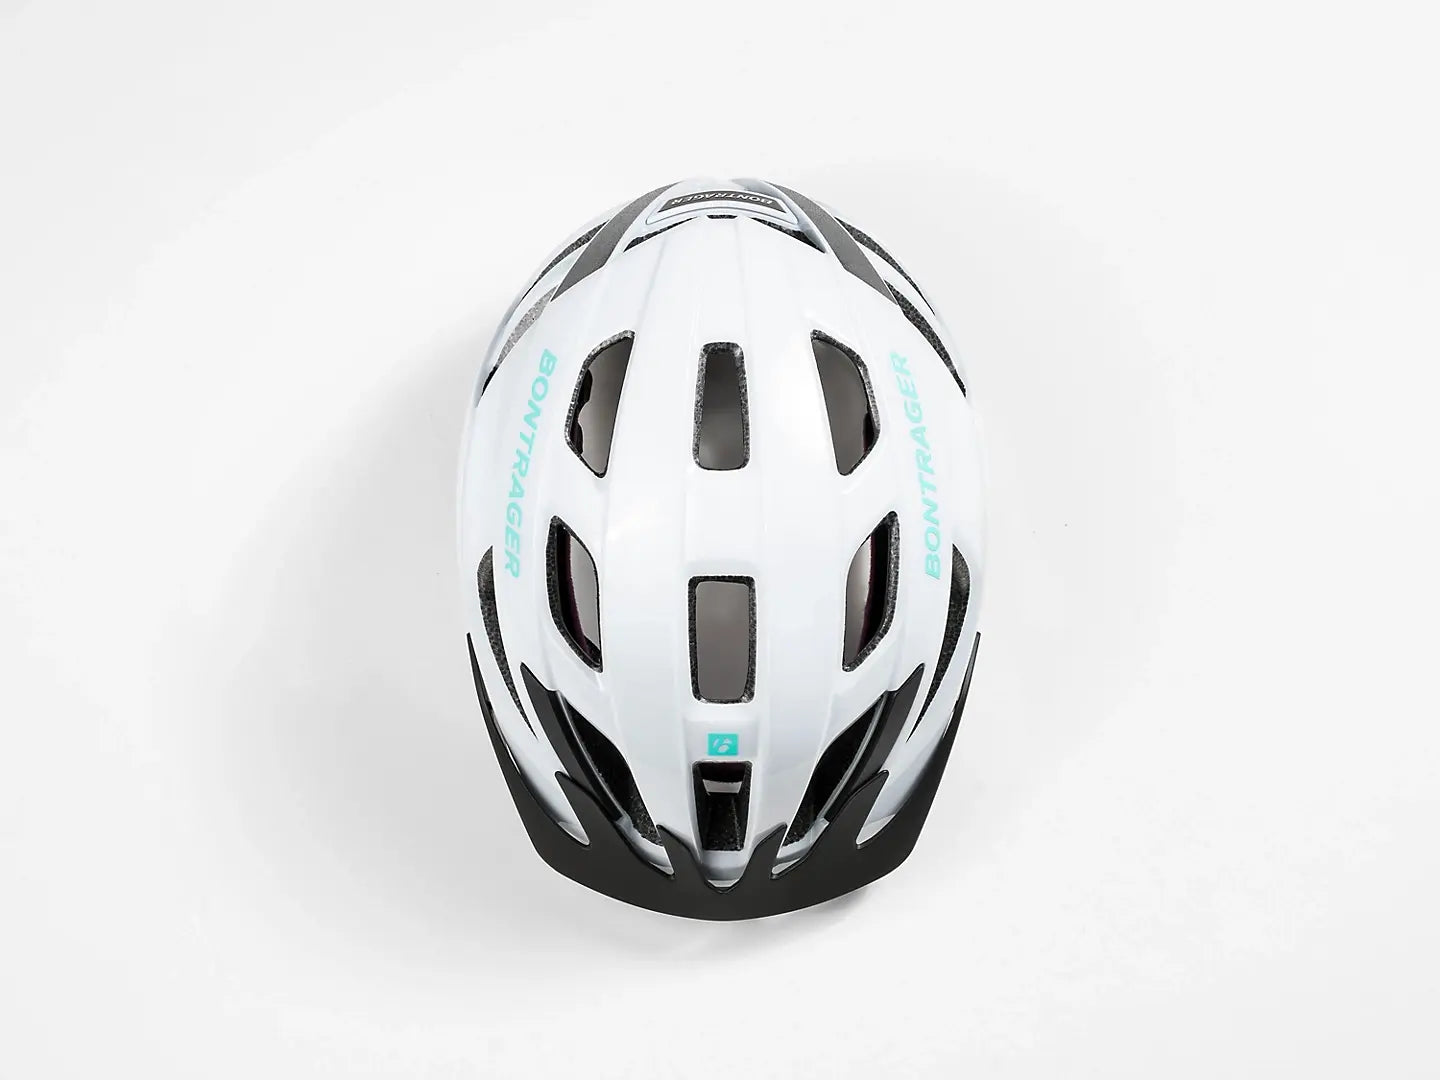 Helmet Bontrager Solstice Wheels Bikes